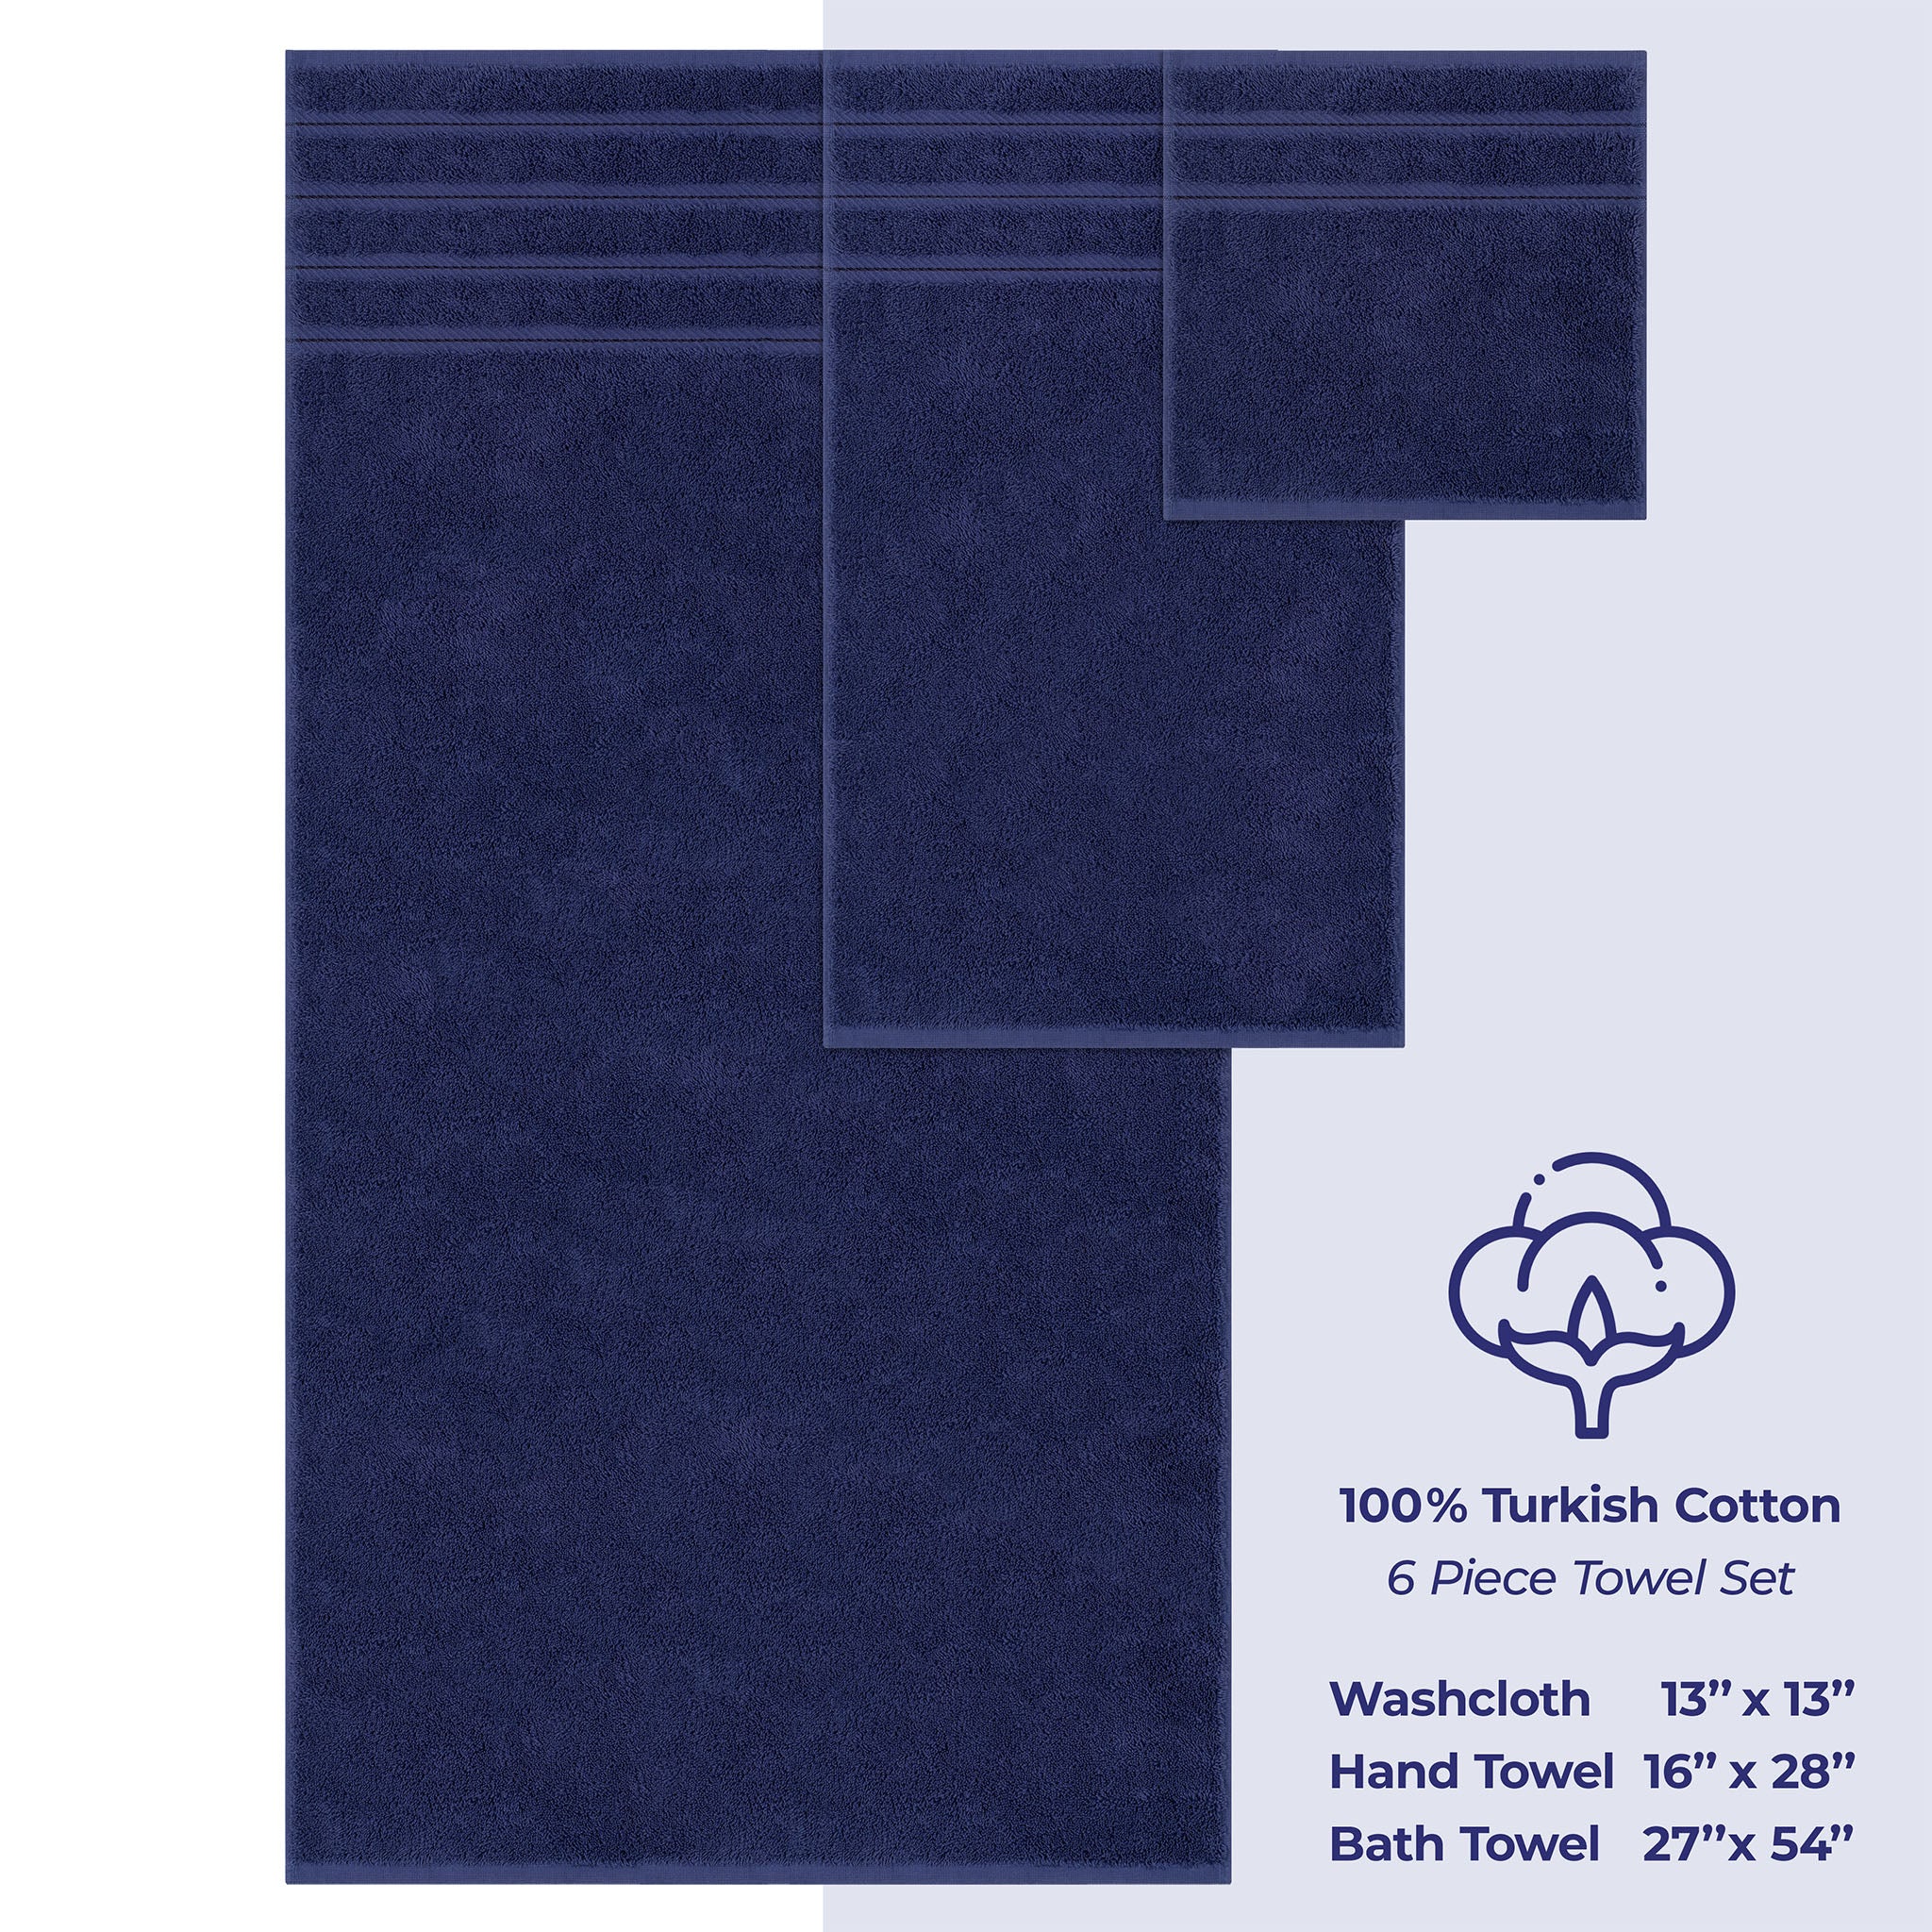 American Soft Linen 100% Turkish Cotton 6 Piece Towel Set Wholesale navy-blue-4